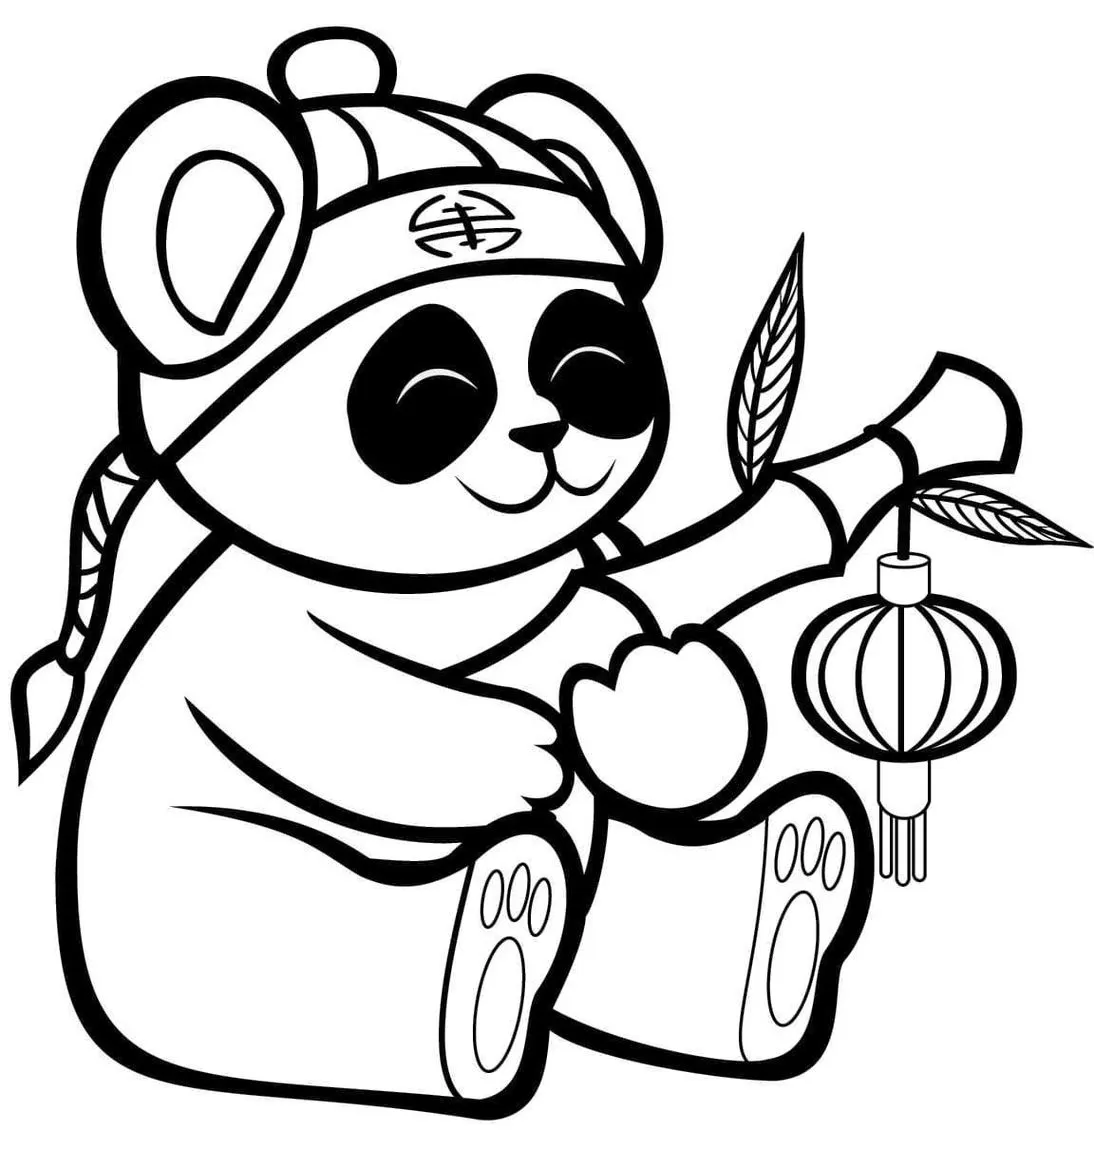 87+ Desenhos de Panda para Imprimir e Colorir/Pintar